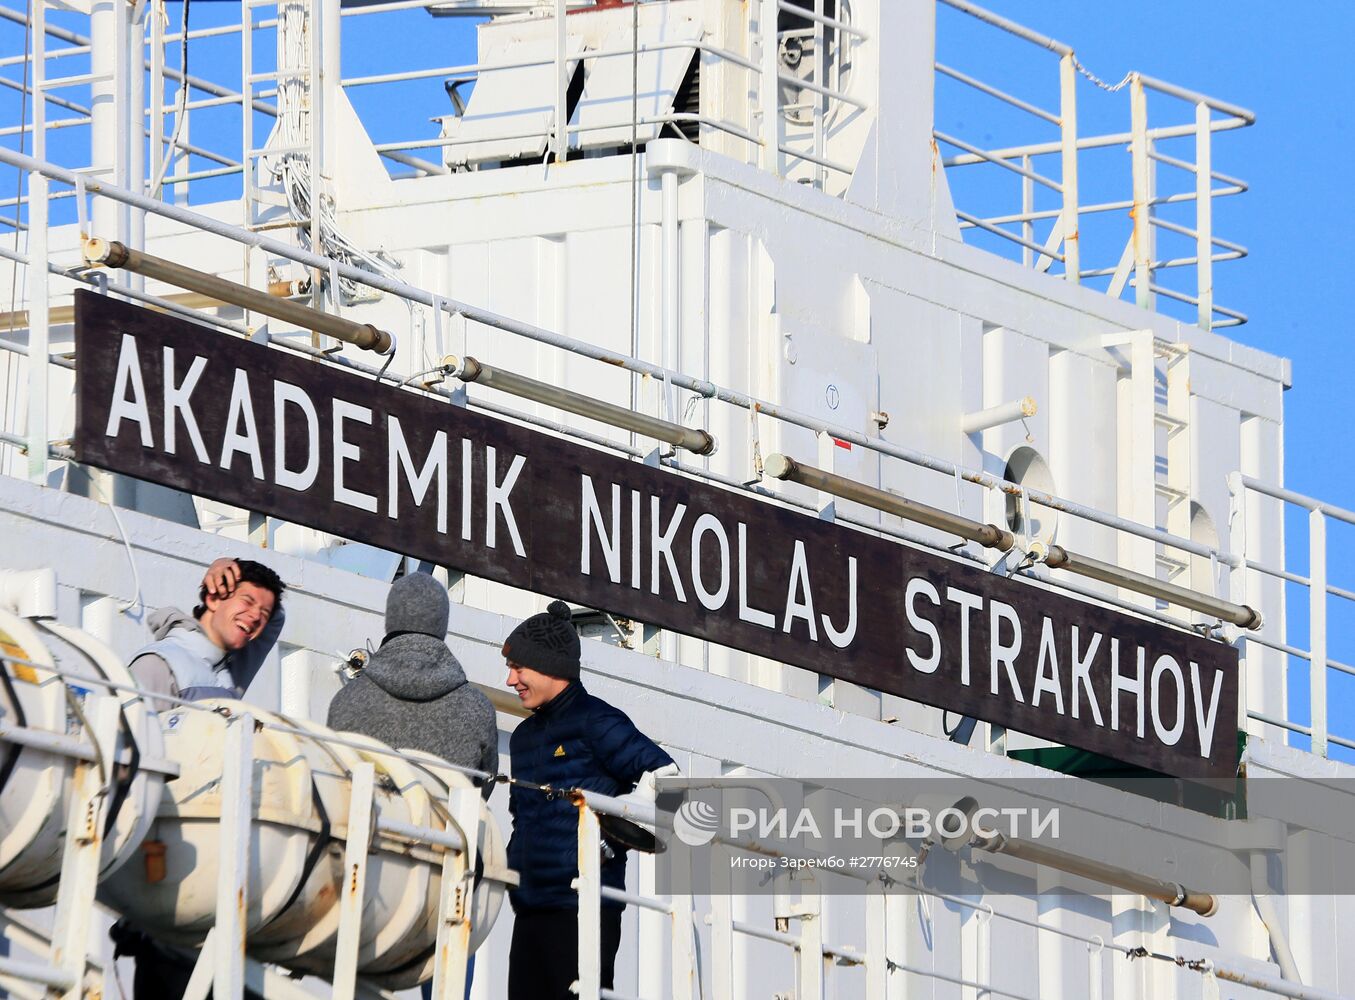 Прибытие научного судна "Академик Николай Страхов" в порт Балтийска